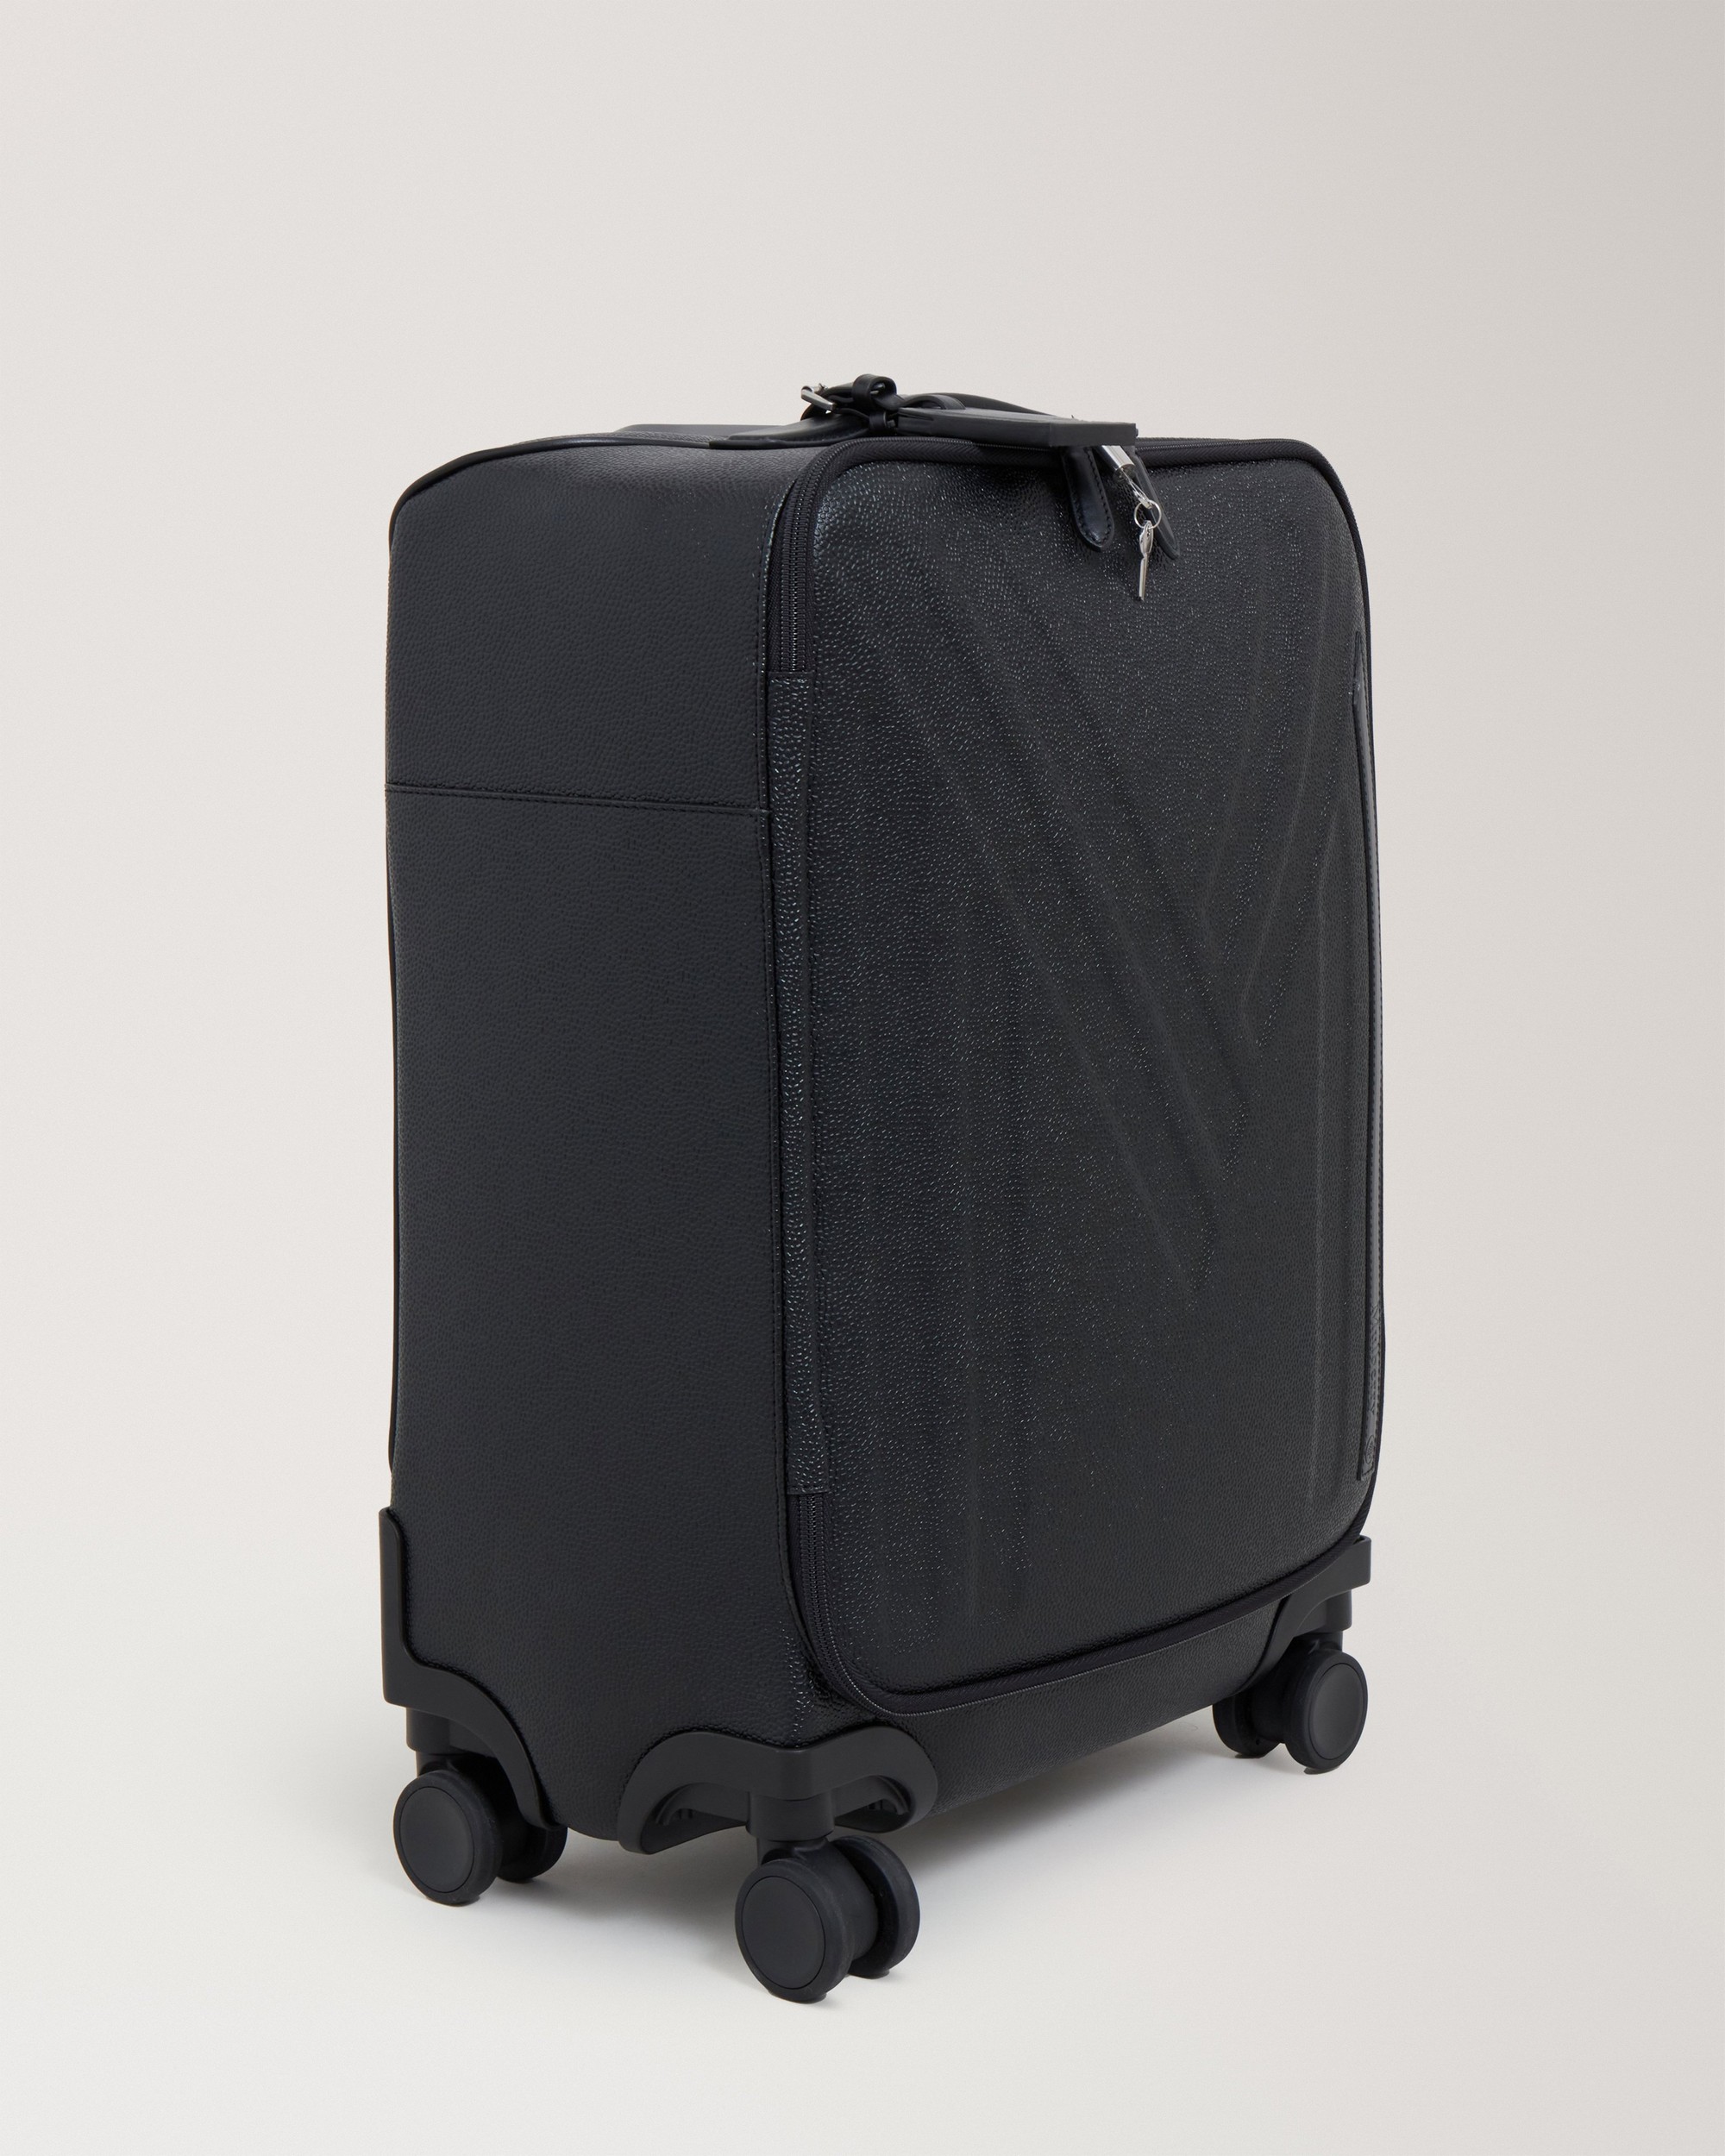 英国マルベリー製スーツケース